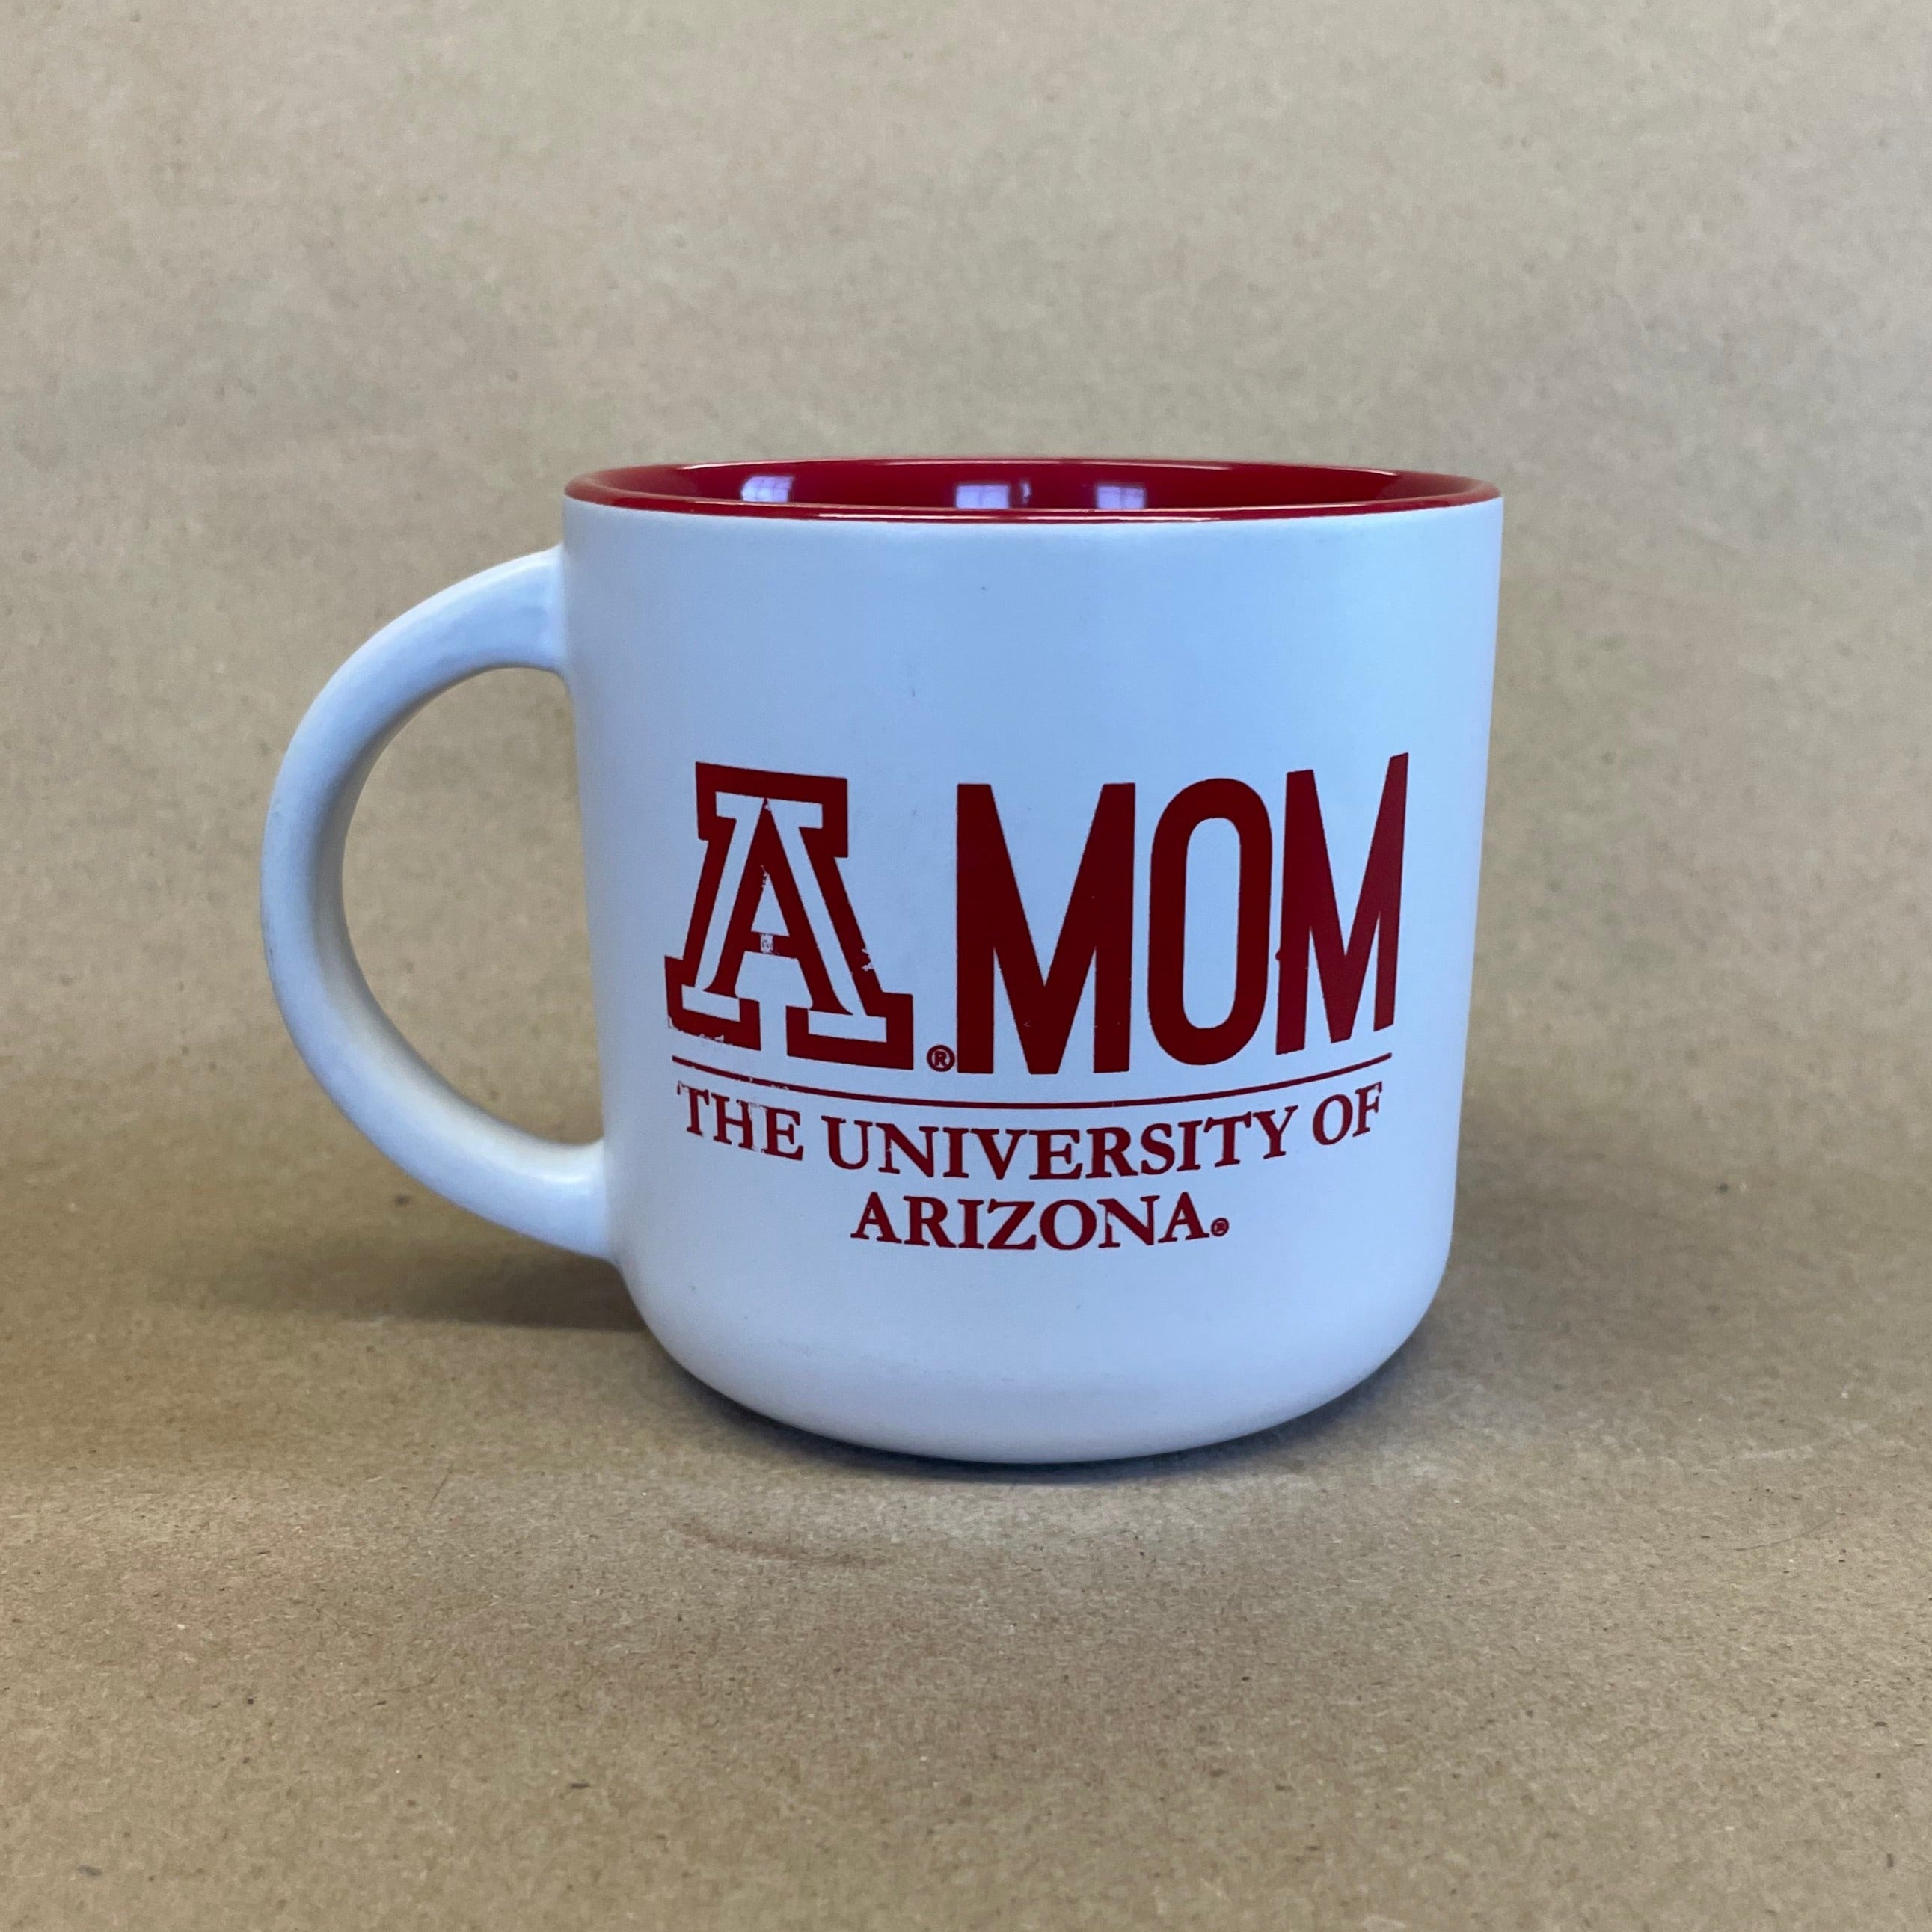 The University of Arizona AMom Mug